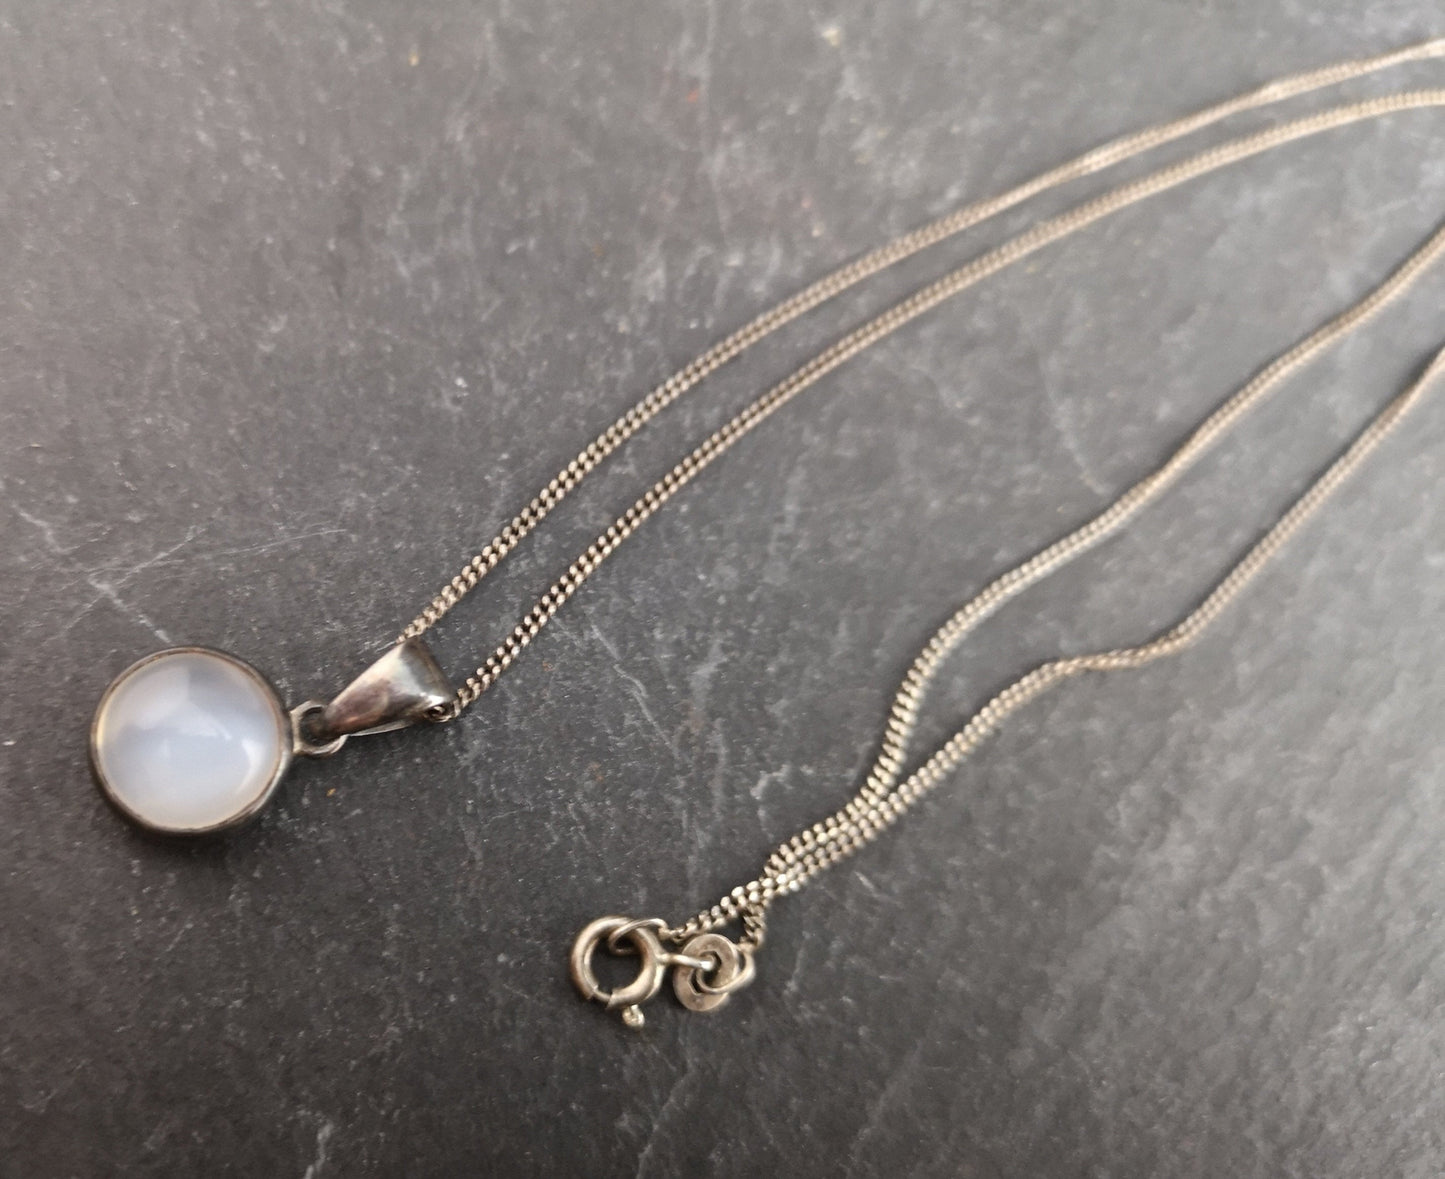 Antique silver moonstone pendant, Art Nouveau necklace